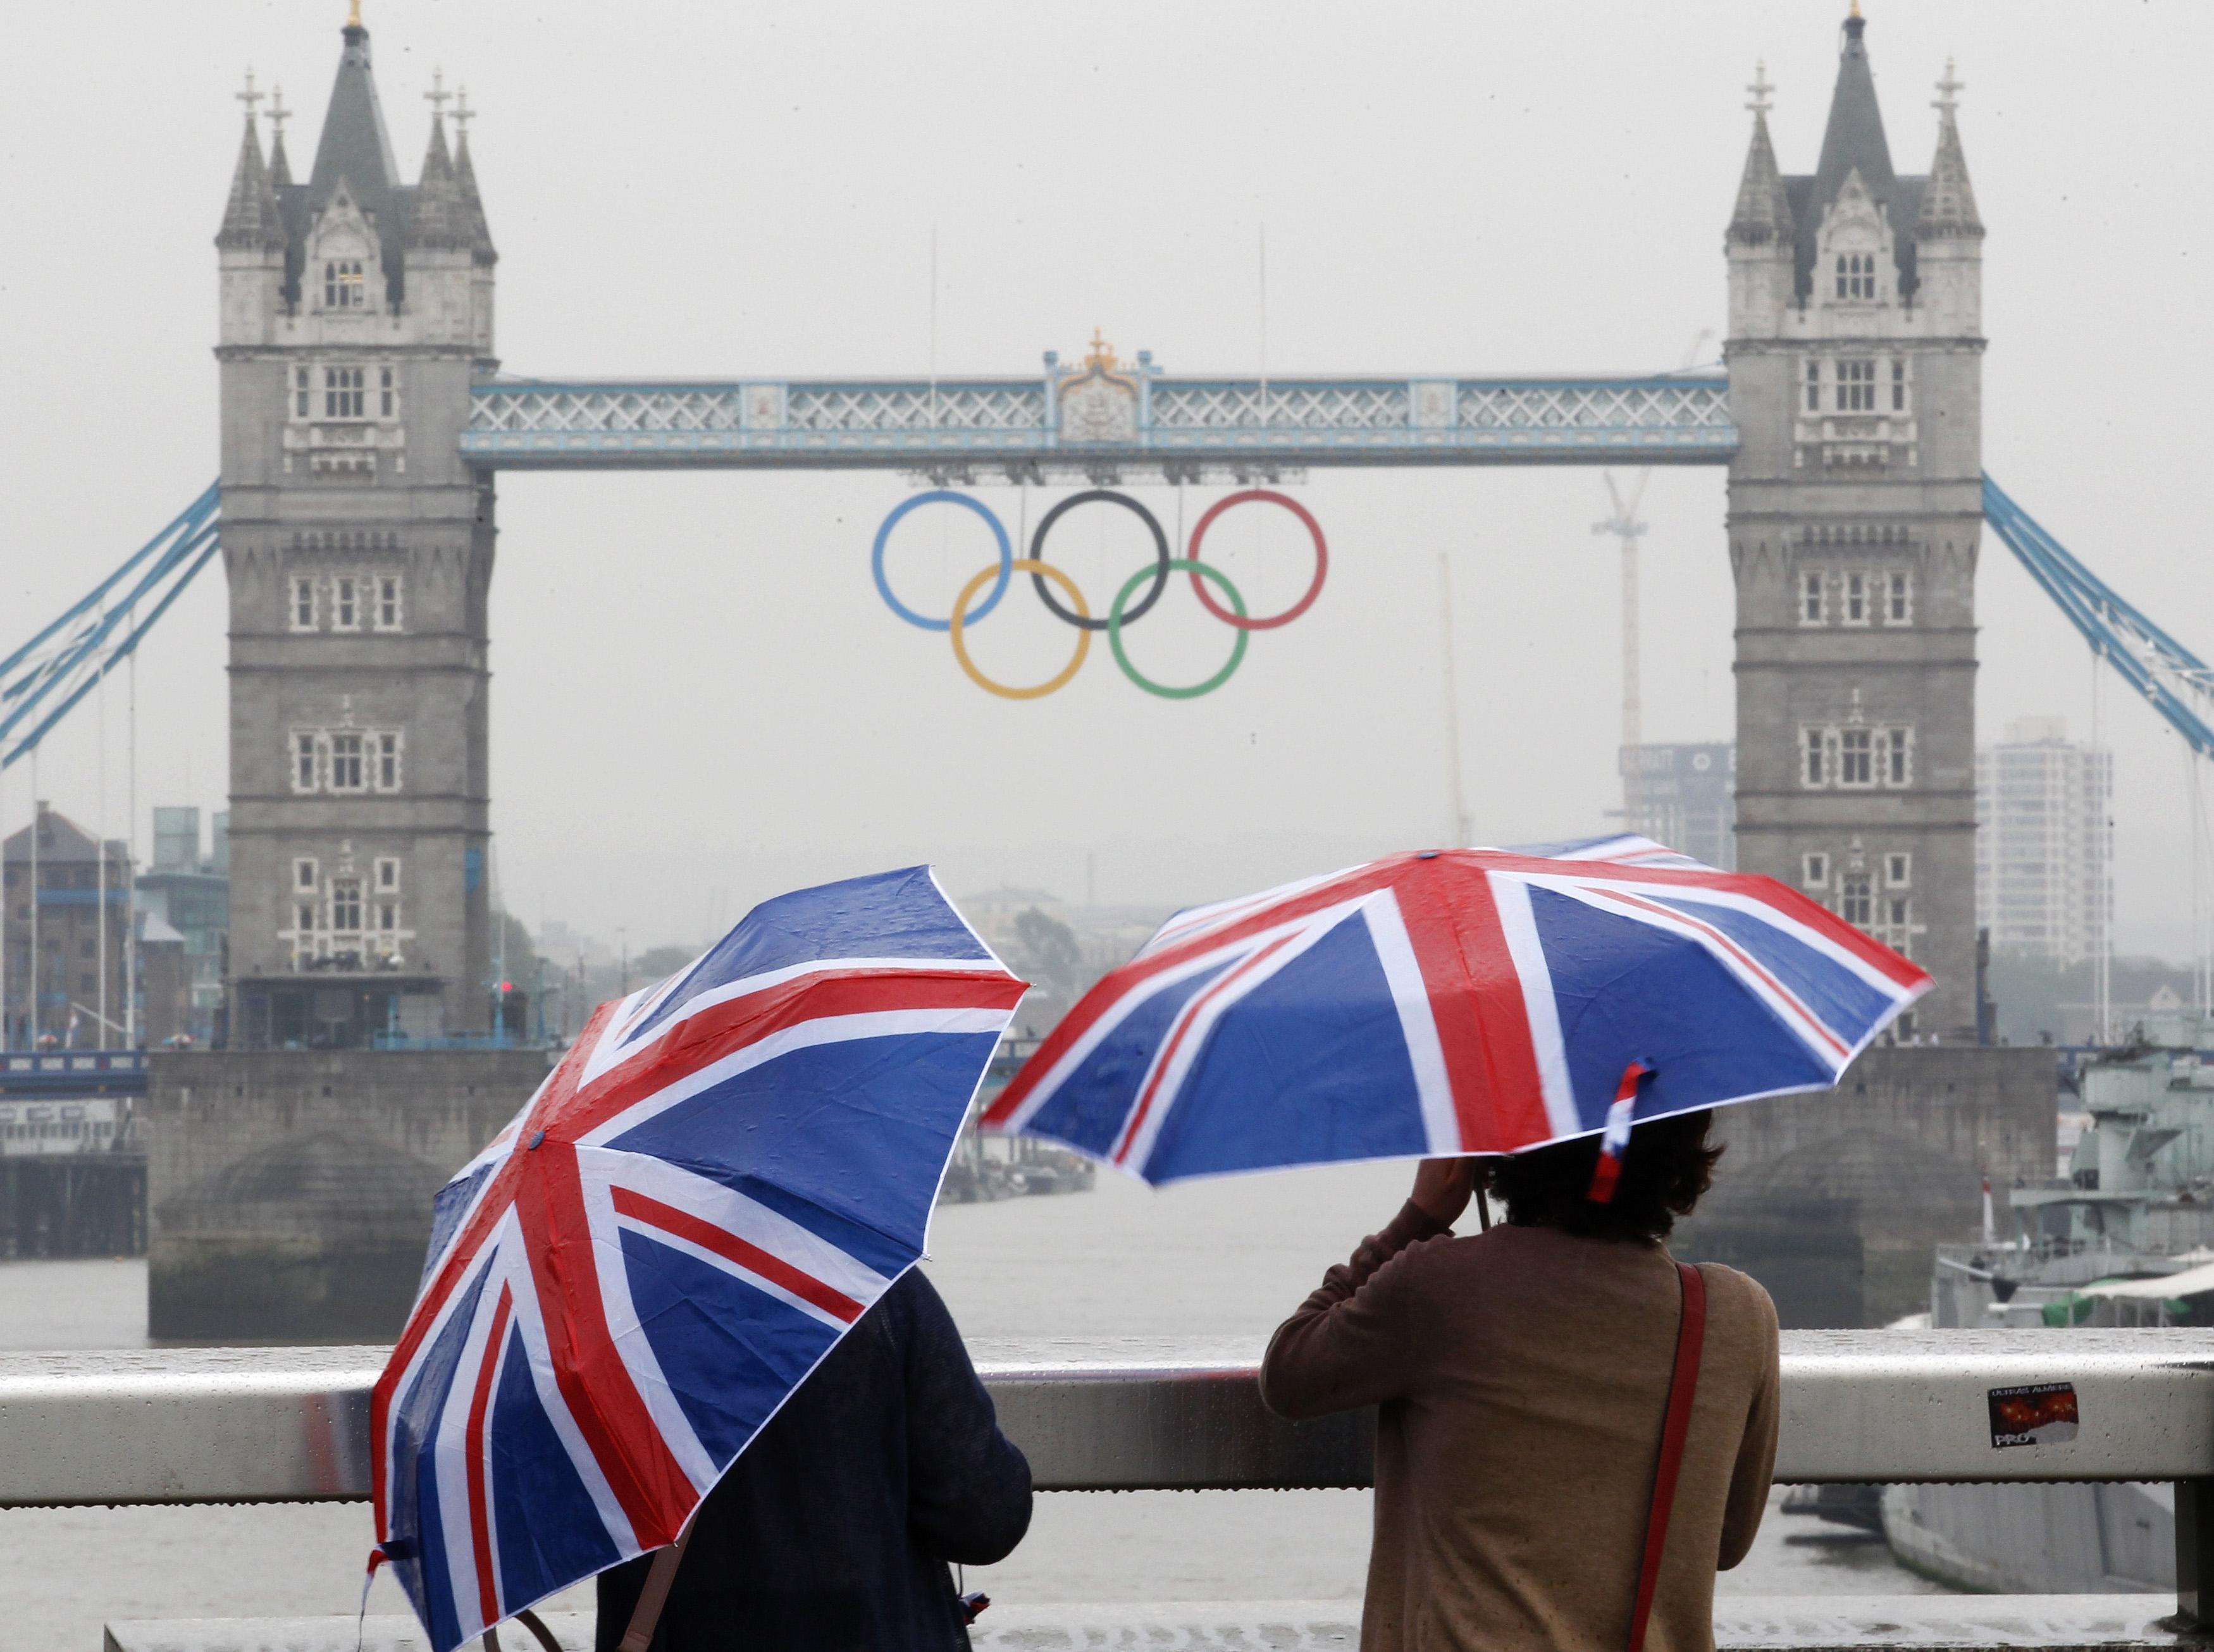 “Κύμα” συλλήψεων υπόπτων για τρομοκρατία στη Βρετανία ενόψει των Ολυμπιακών Αγώνων